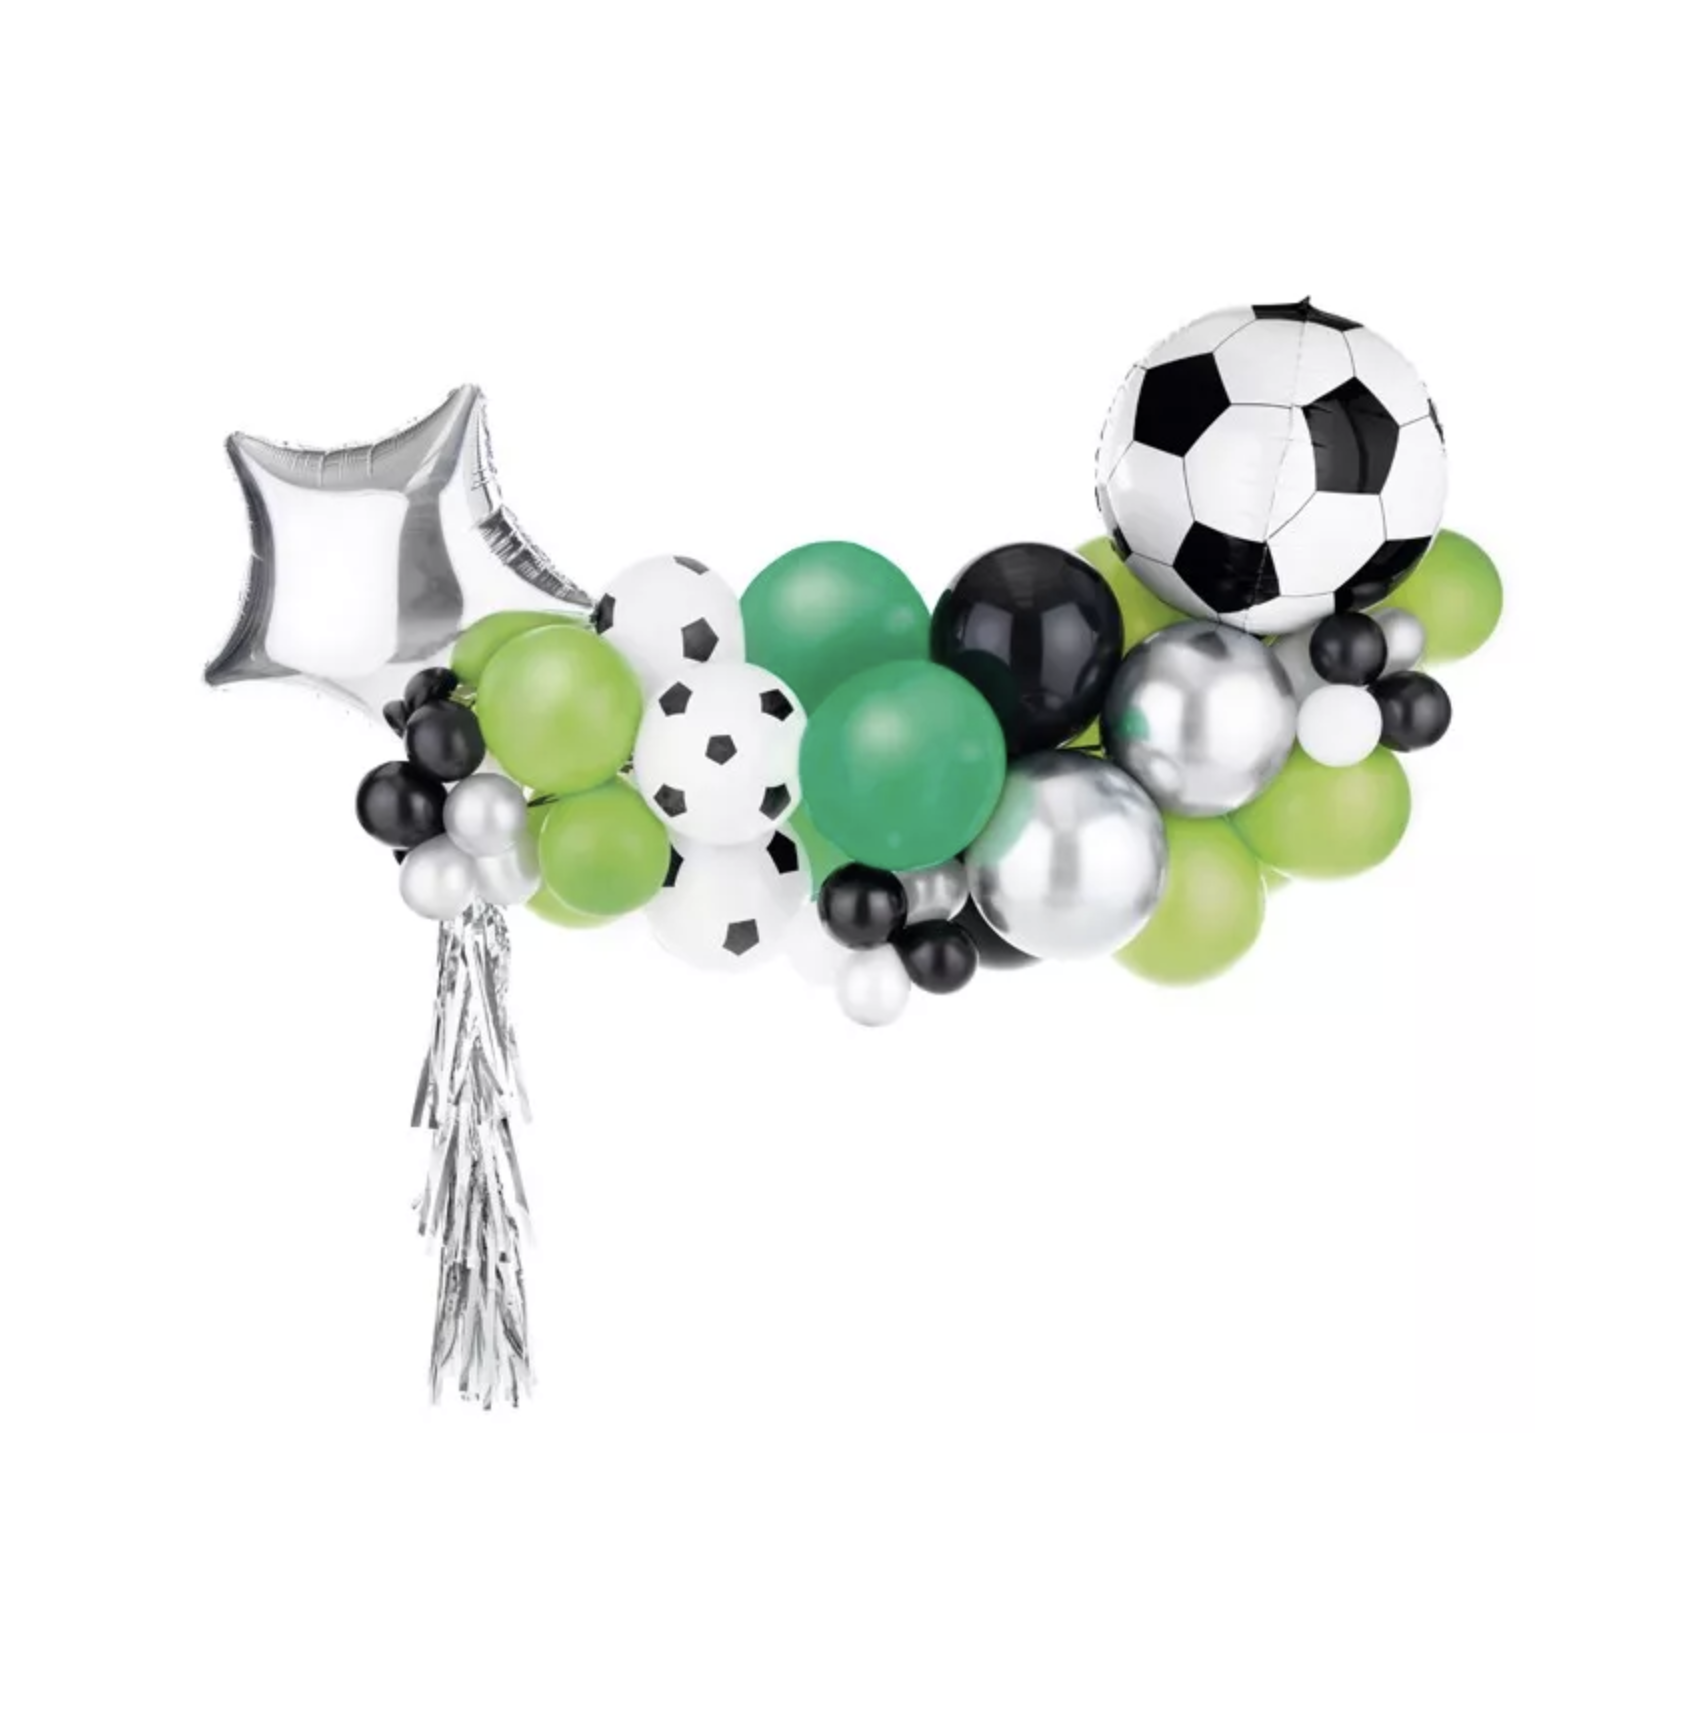 uitdrukking Aas wit Voetbal ballonnen slinger | J-style-deco.nl | Snelle levering! -  J-style-deco.nl | Online feestwinkel Zeeland